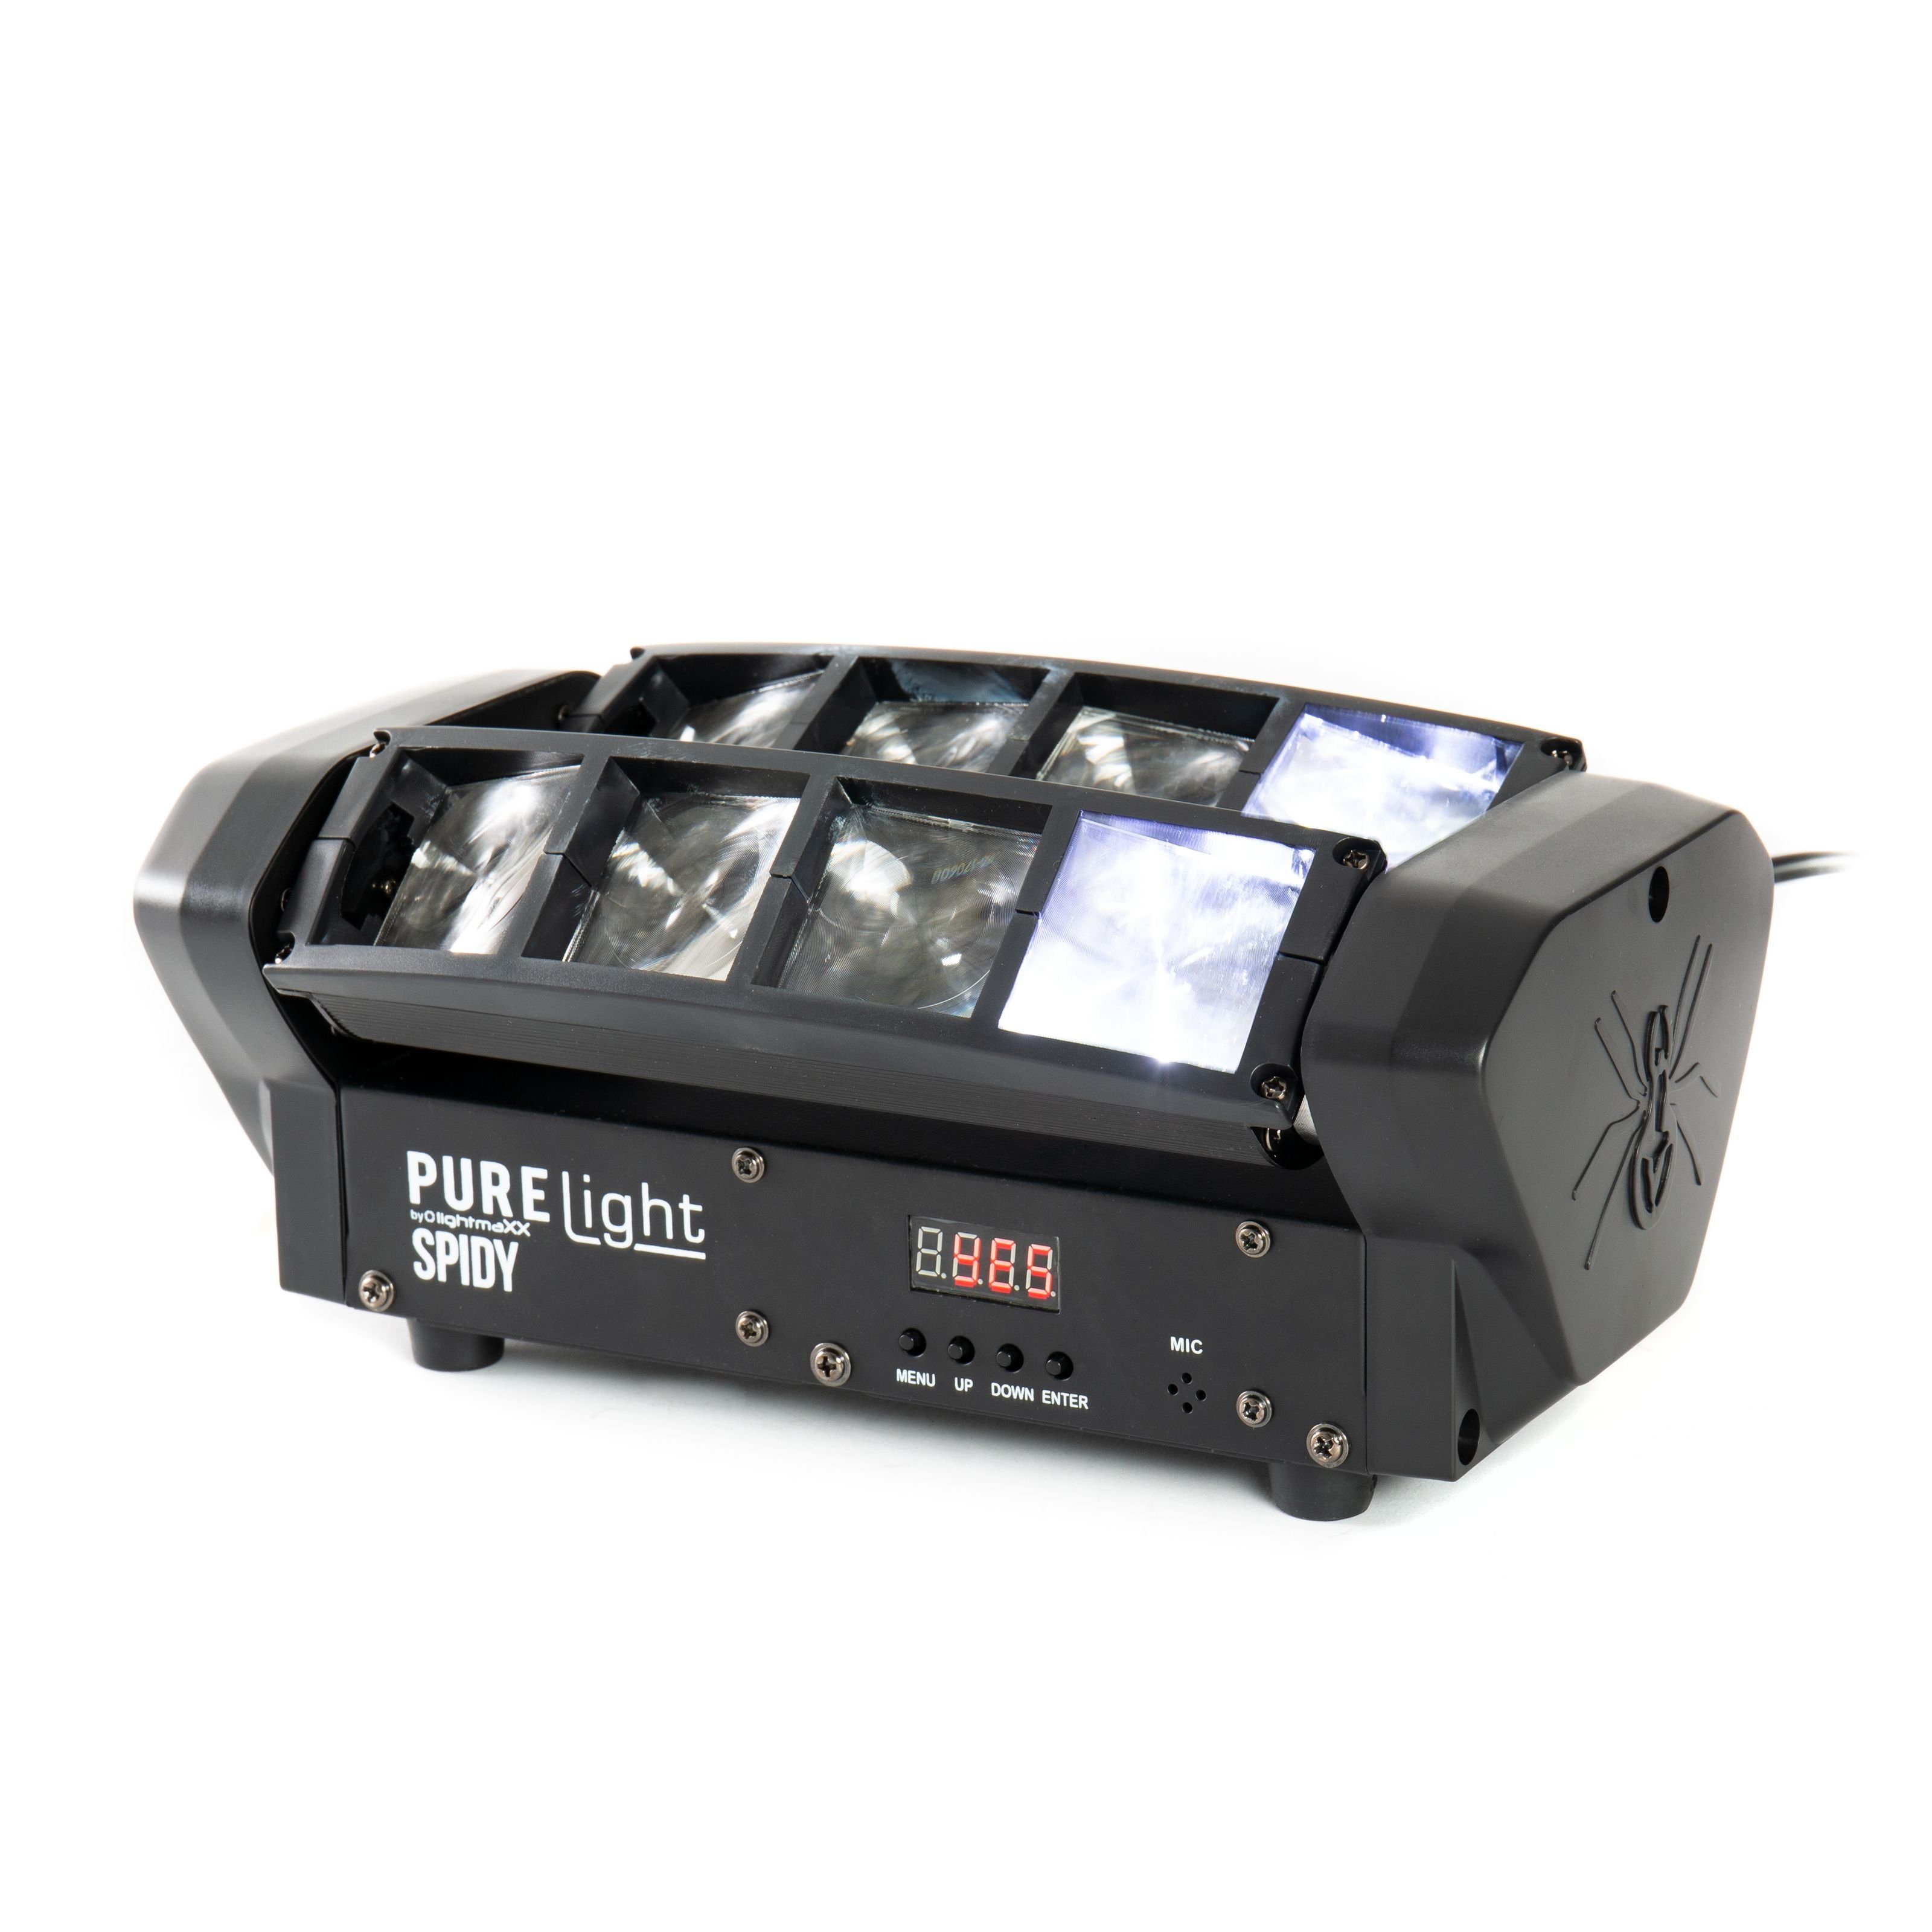 RGBW LED 8x 5W PURElight Discolicht, - Showeffekt Spidy CREE